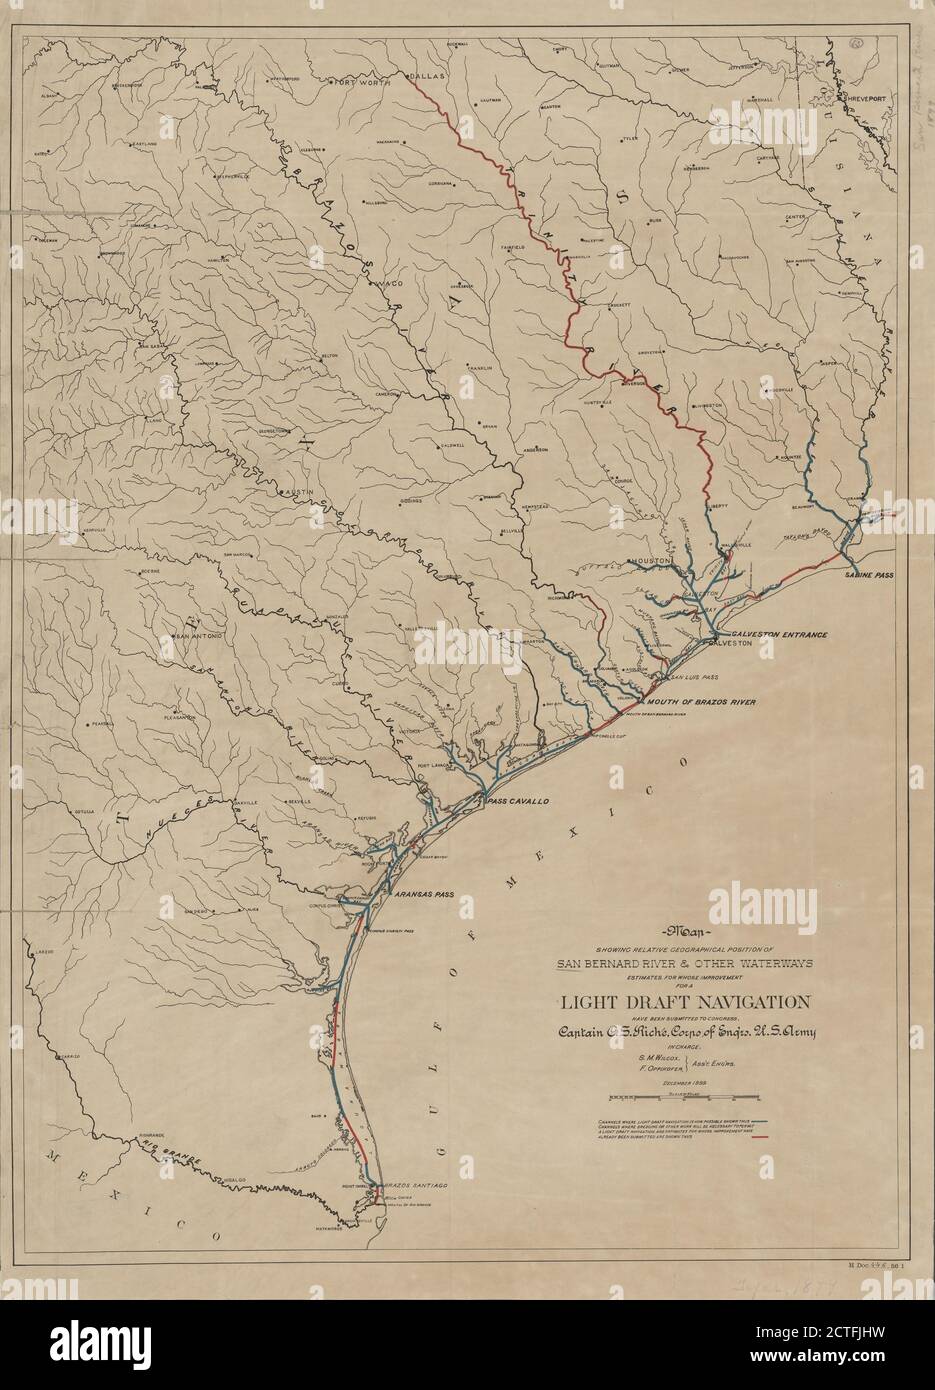 Mappa che mostra la posizione geografica relativa del fiume San Bernardo e di altri corsi d'acqua, cartografica, Maps, 1899, Riché, C. S. (Charles Swift), 1864-1936, Wilcox, S. M., Oppikofer, F. Foto Stock